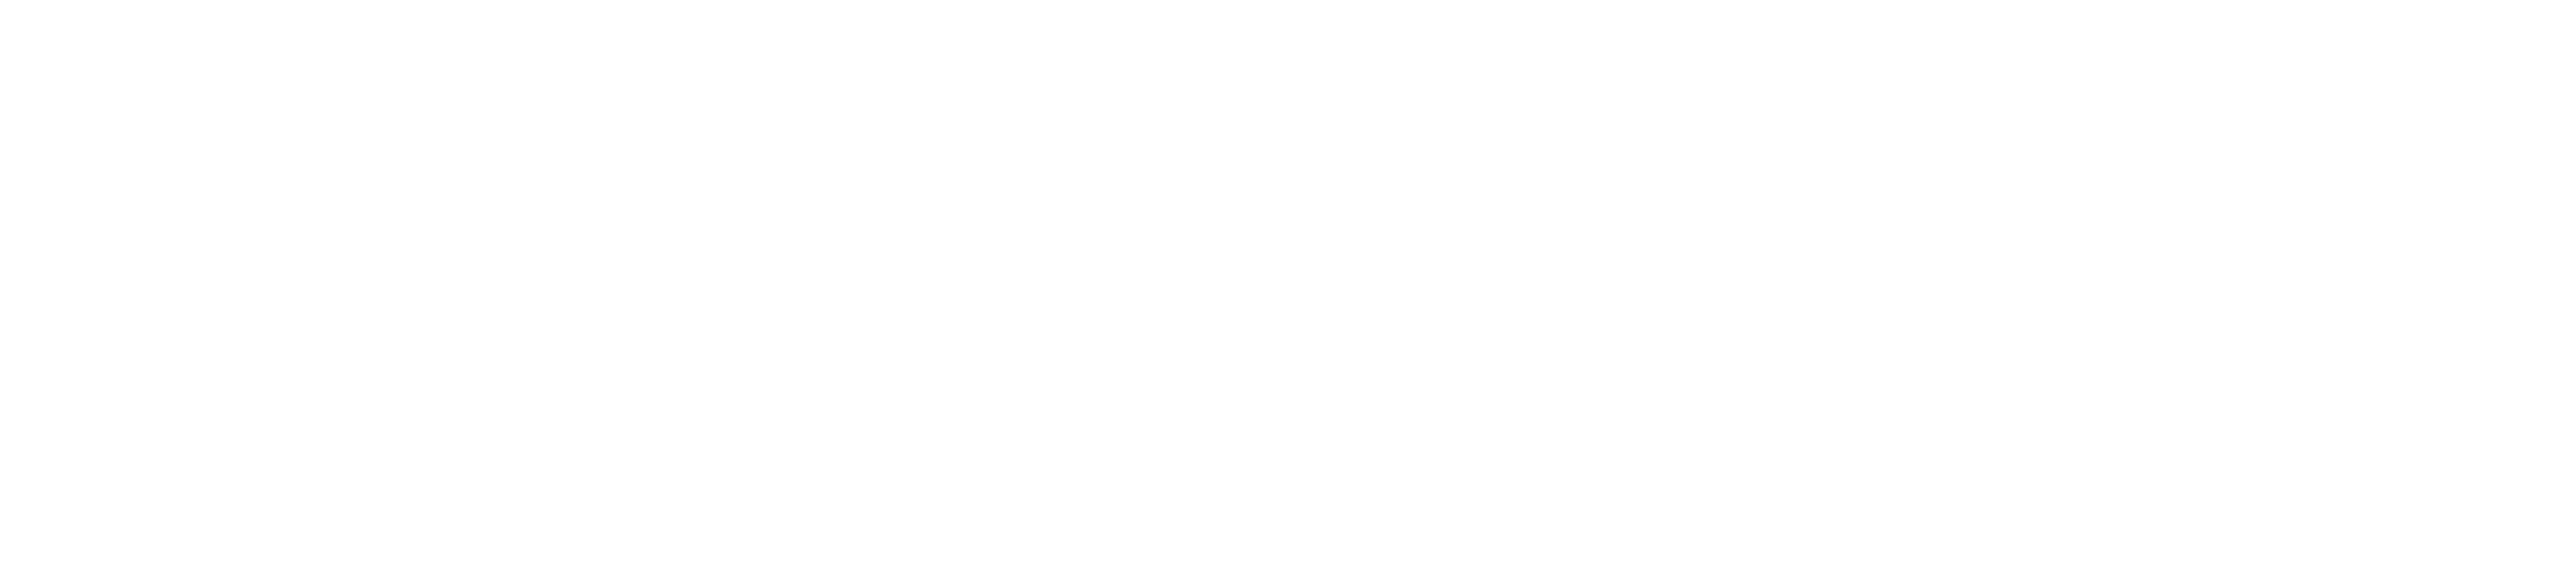 Wort und Bildmarke von "KELLER Transporte & Baustoffhandel" in weiß